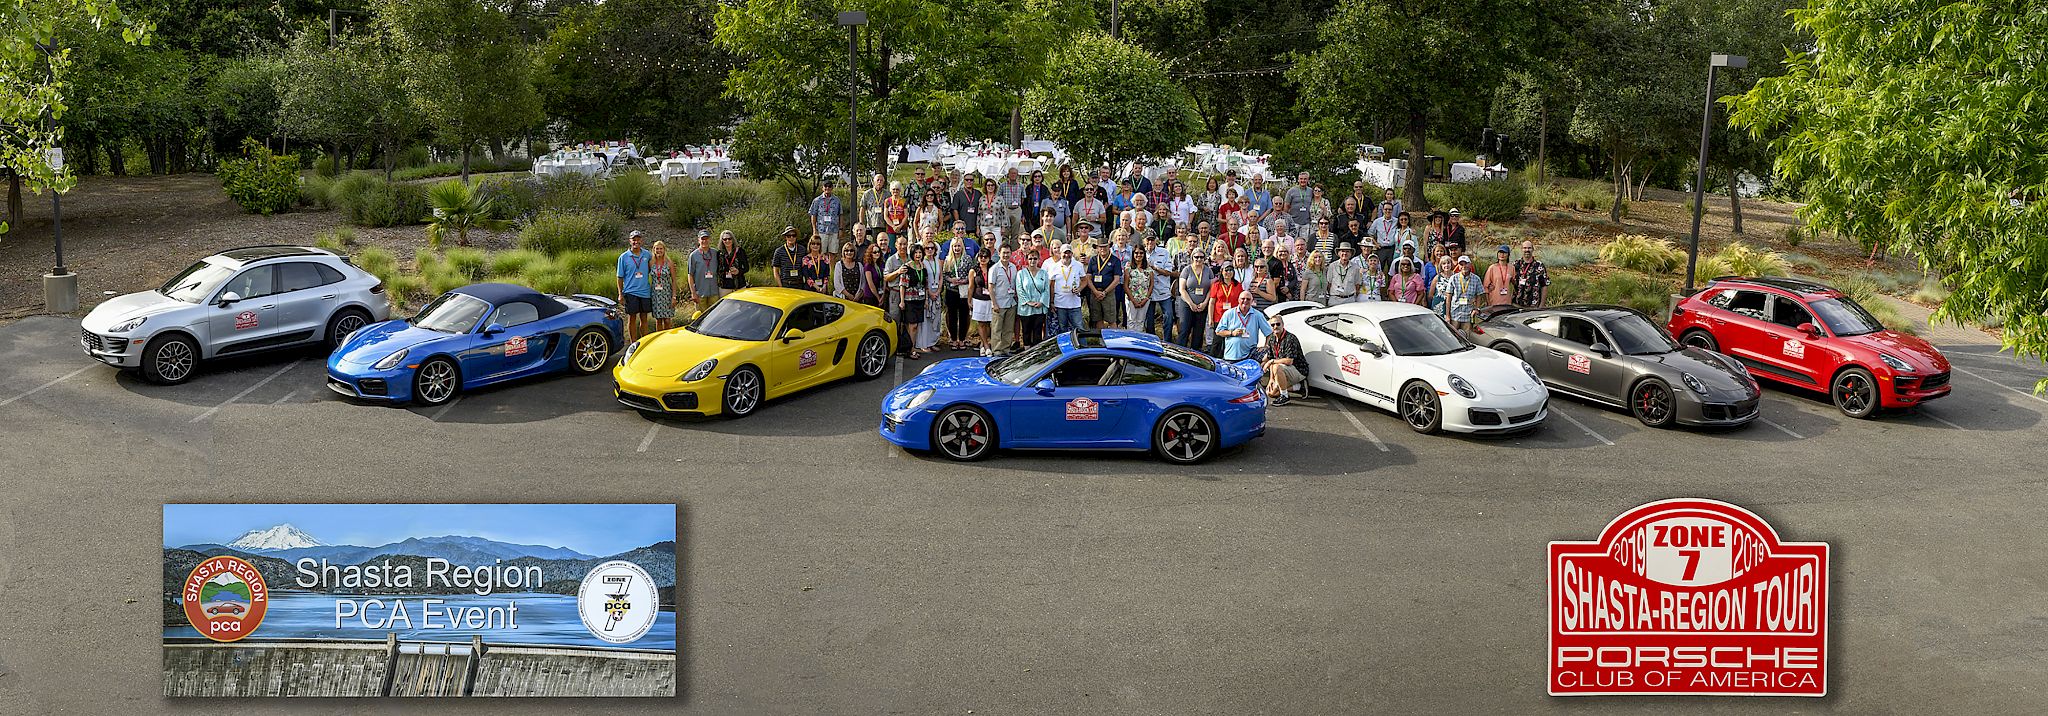 Porsche Club of America Shasta Region